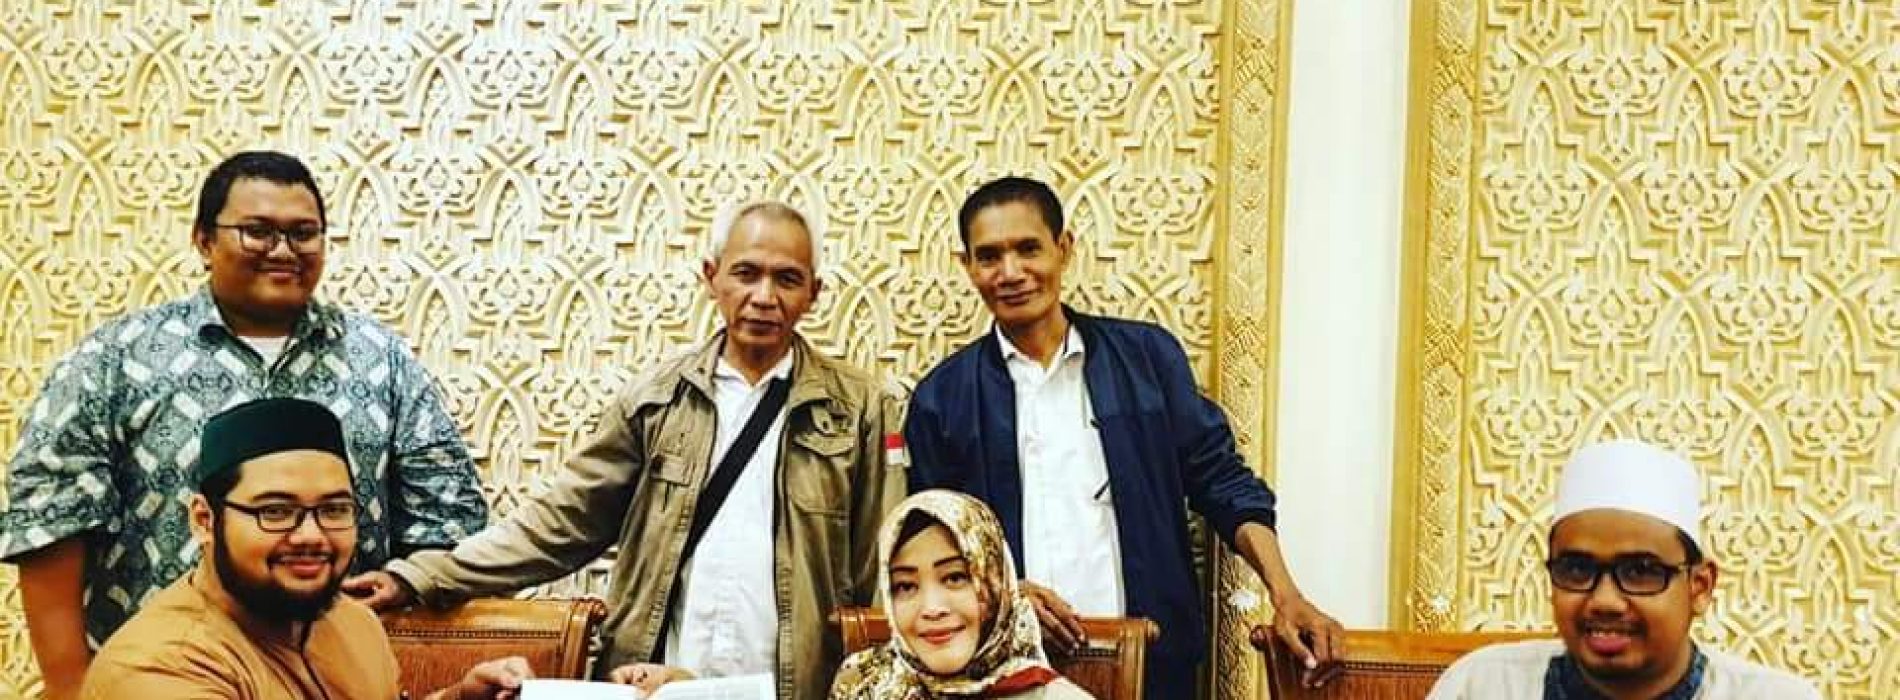 FAHIRA IDRIS Calon Anggota DPD RI Dapil DKI Jakarta tandatangan PAKTA INTEGRITAS langsung yang dikeluarkan oleh DPP Front Pembela Islam (FPI)